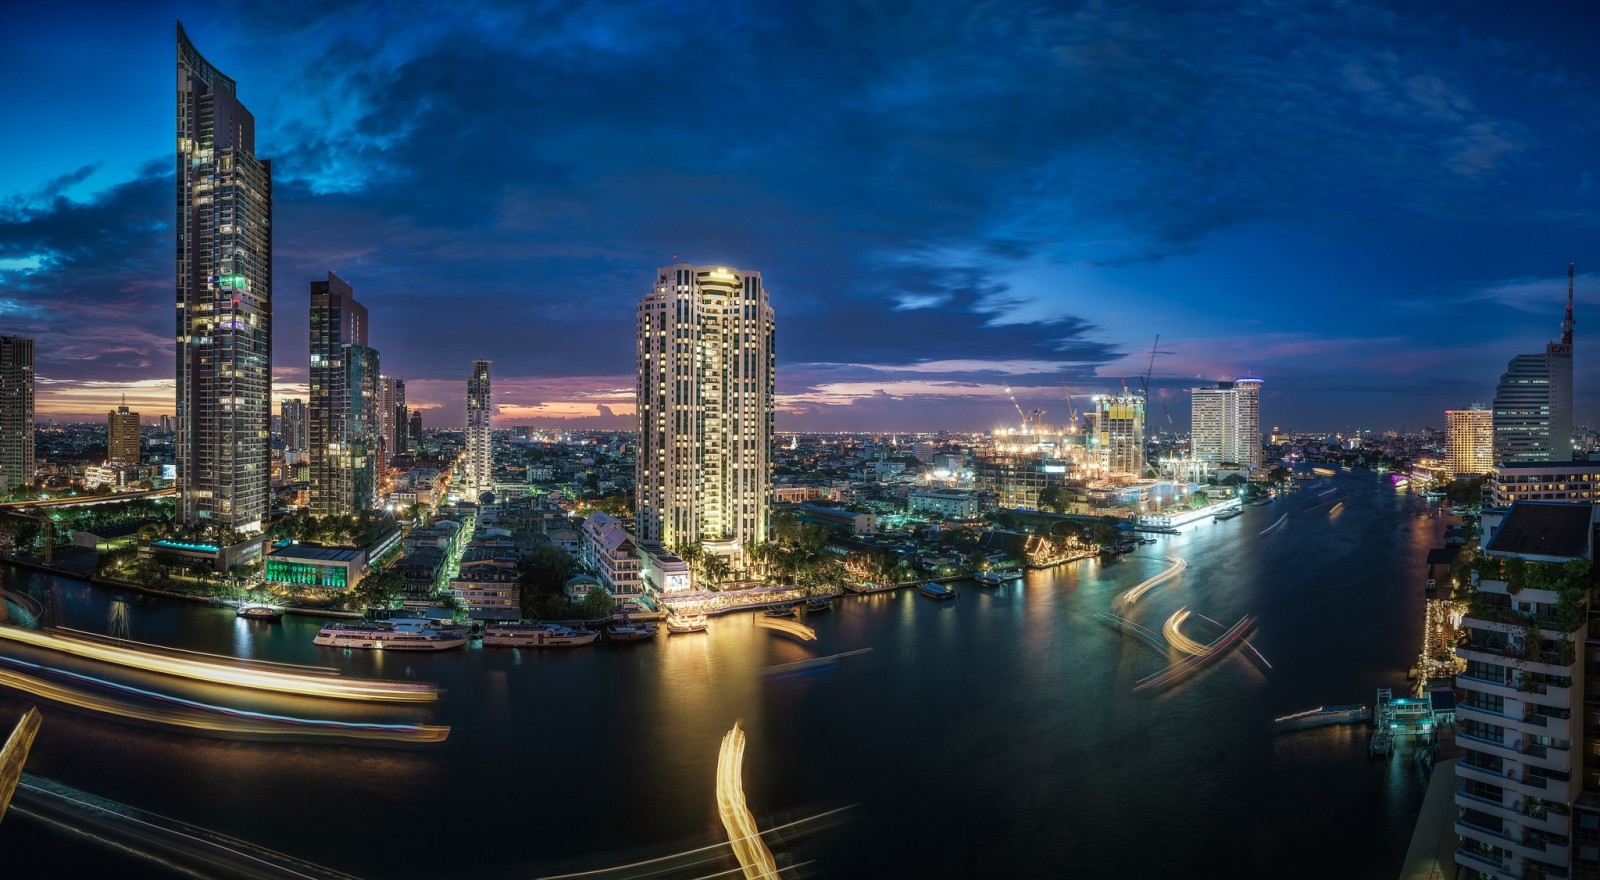 แม่น้ำ, คืนเมือง, ตึกระฟ้า, อาคาร, ประเทศไทย, กรุงเทพมหานคร, แม่น้ำเจ้าพระยา, แม่น้ำเจ้าพระยา